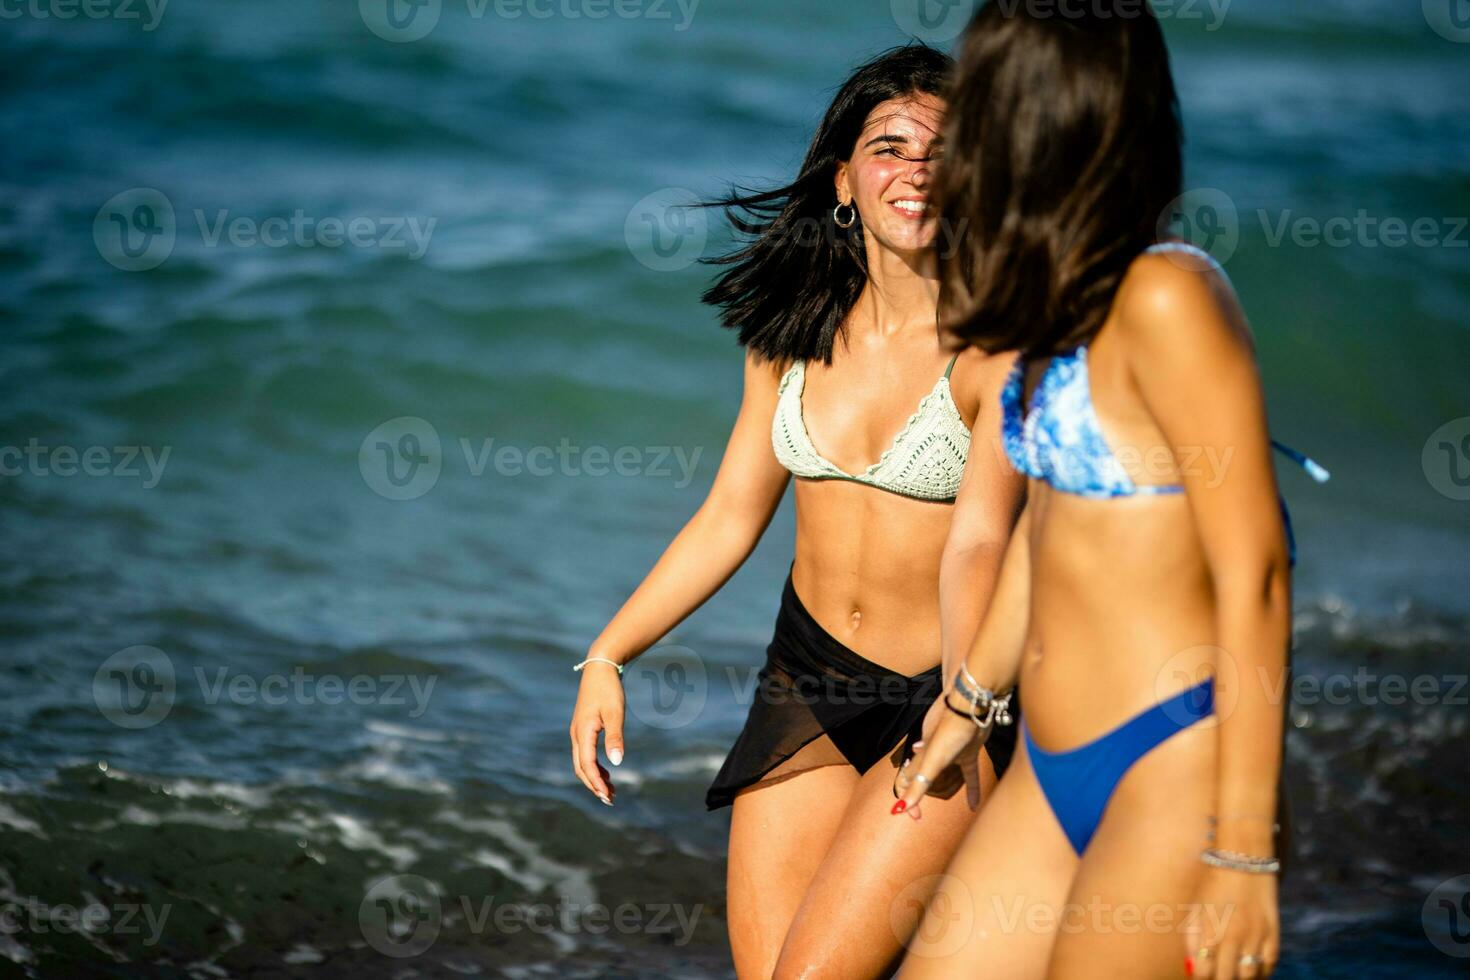 deux jolie Jeune femme ayant amusement sur le bord de mer photo